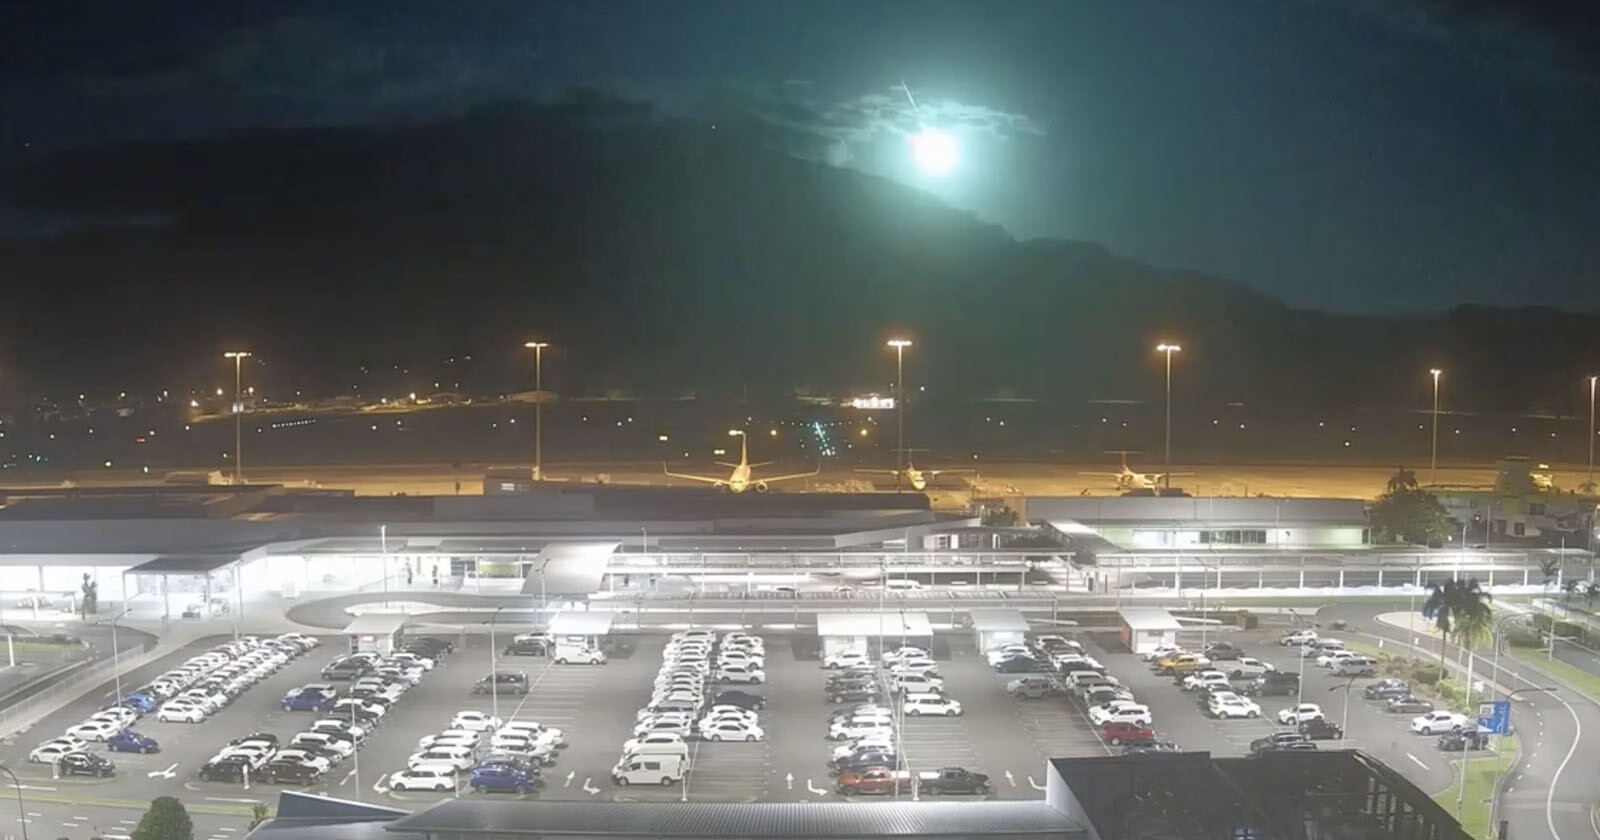  airport camera captures huge meteor explosion 